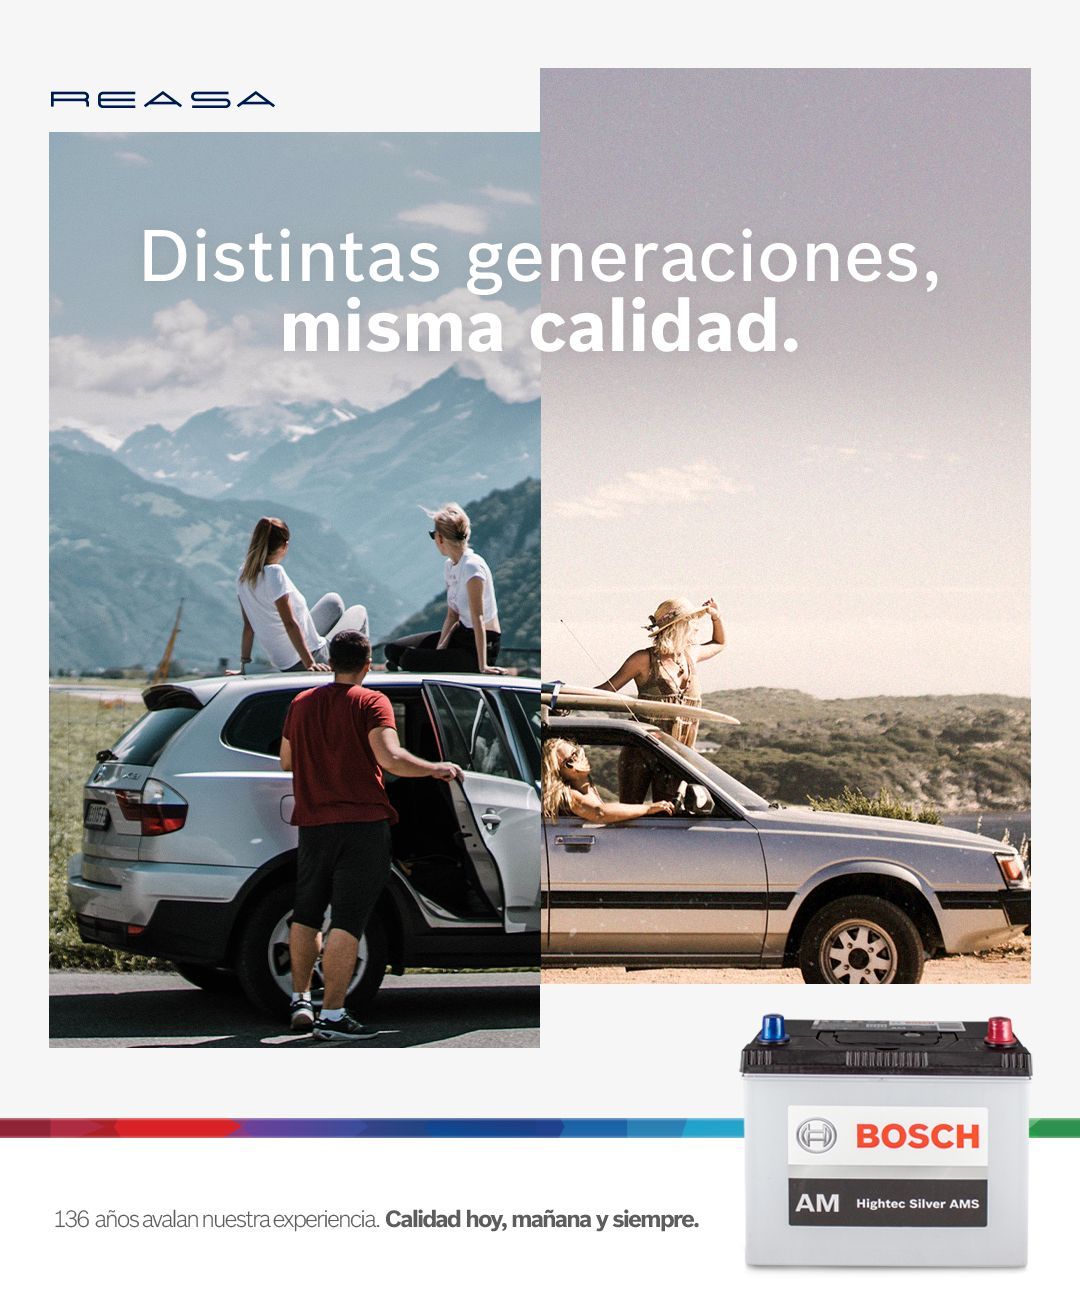 Un anuncio de baterías Bosch muestra a un hombre saliendo de un coche en diferentes generaciones